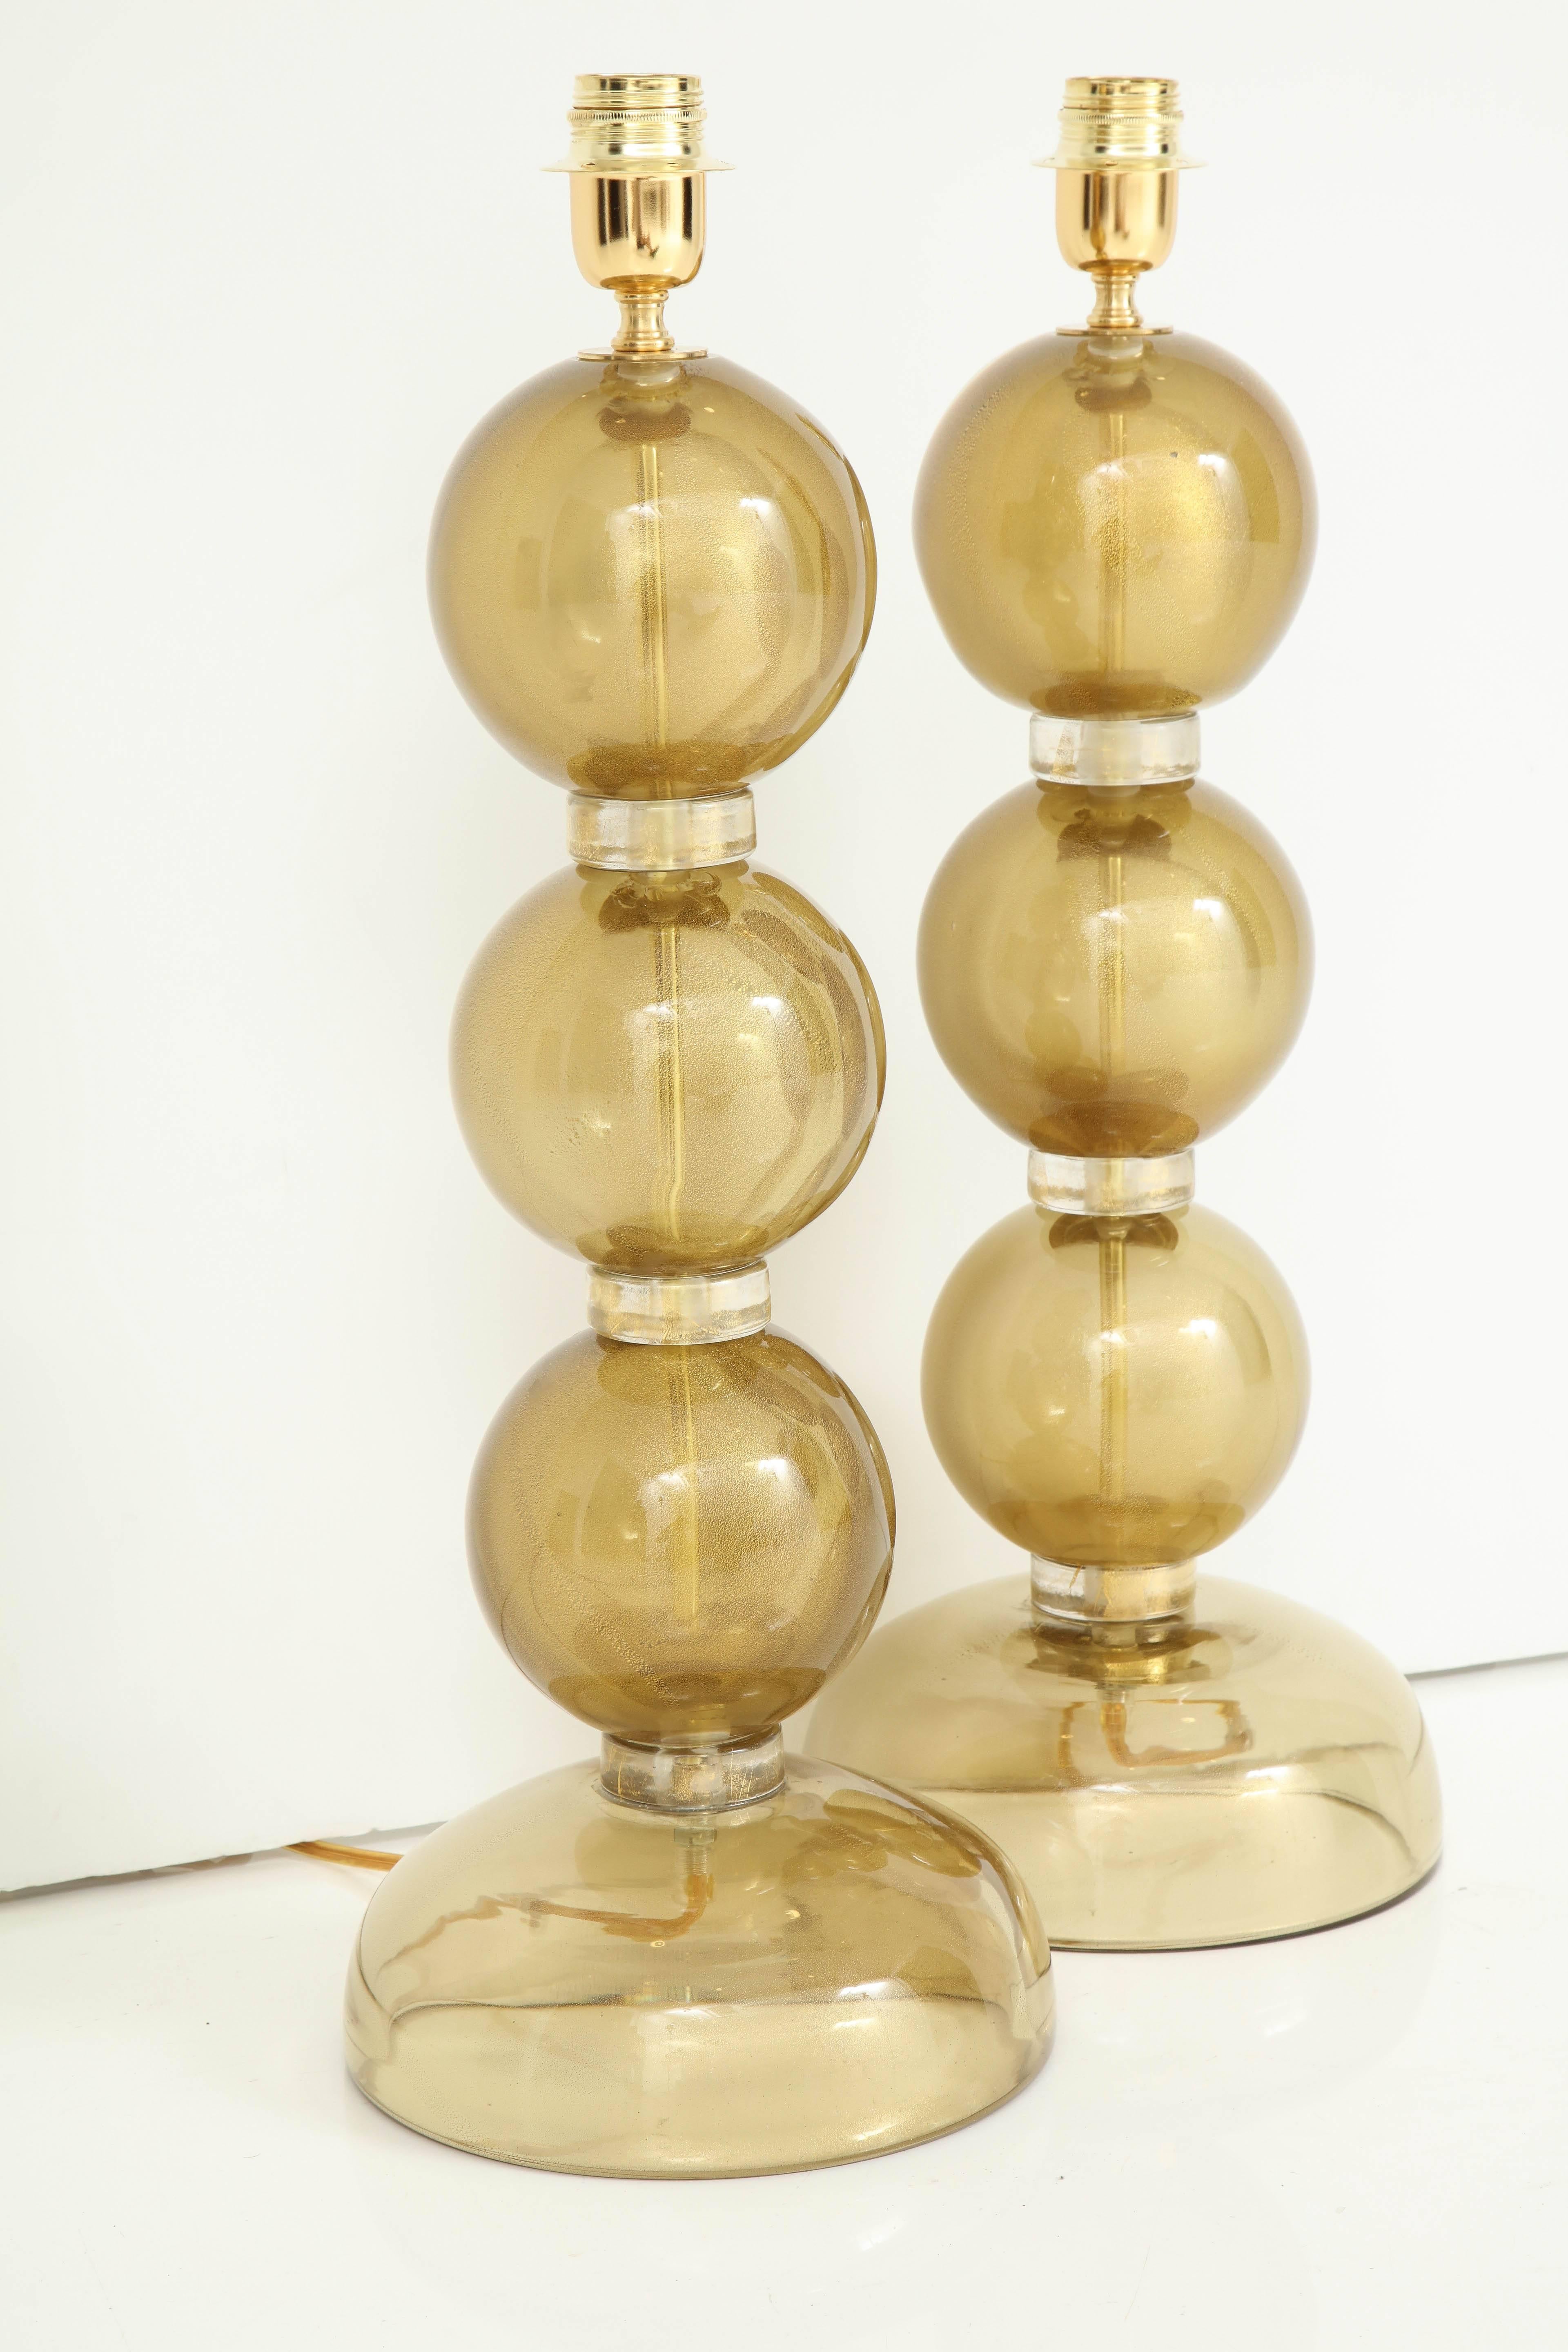 Paire de lampes composées de verre de Murano transparent soufflé à la main et infusé d'or 23 carats, créant un effet doré riche et lumineux. Chacune des trois sphères est séparée par des anneaux en verre avec des mouchetures d'or. Fabriqué à la main